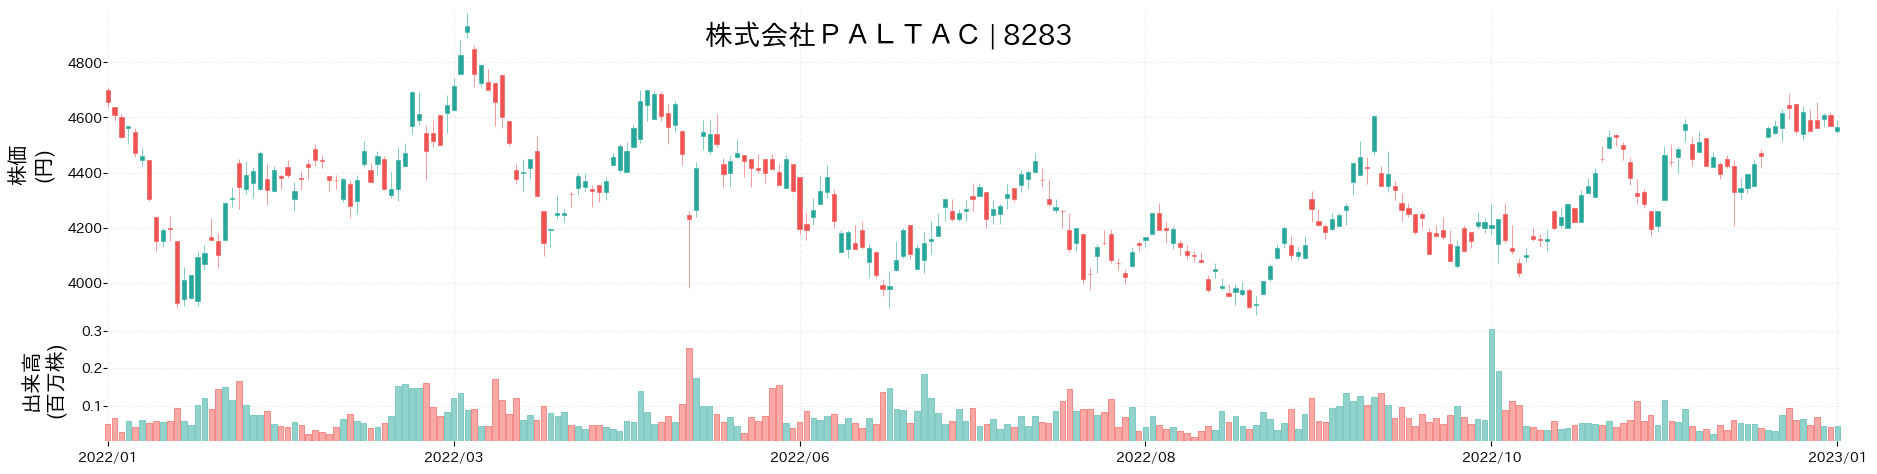 PALTACの株価推移(2022)